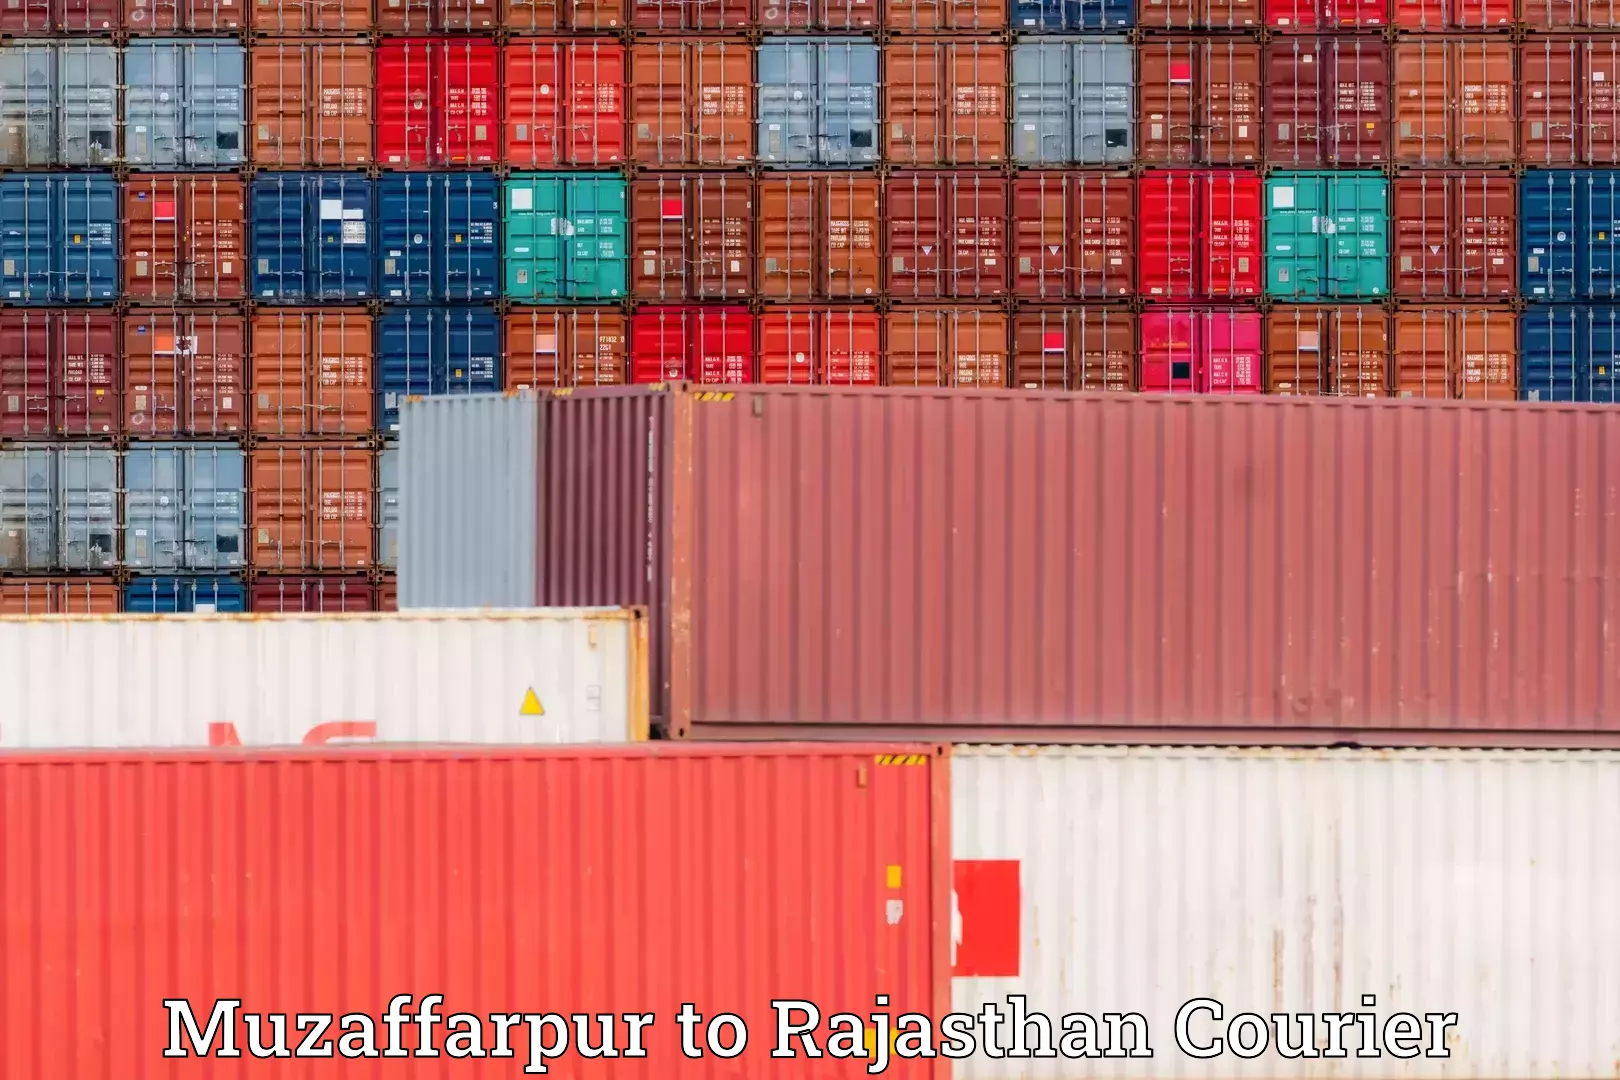 Furniture moving experts Muzaffarpur to Rajasthan